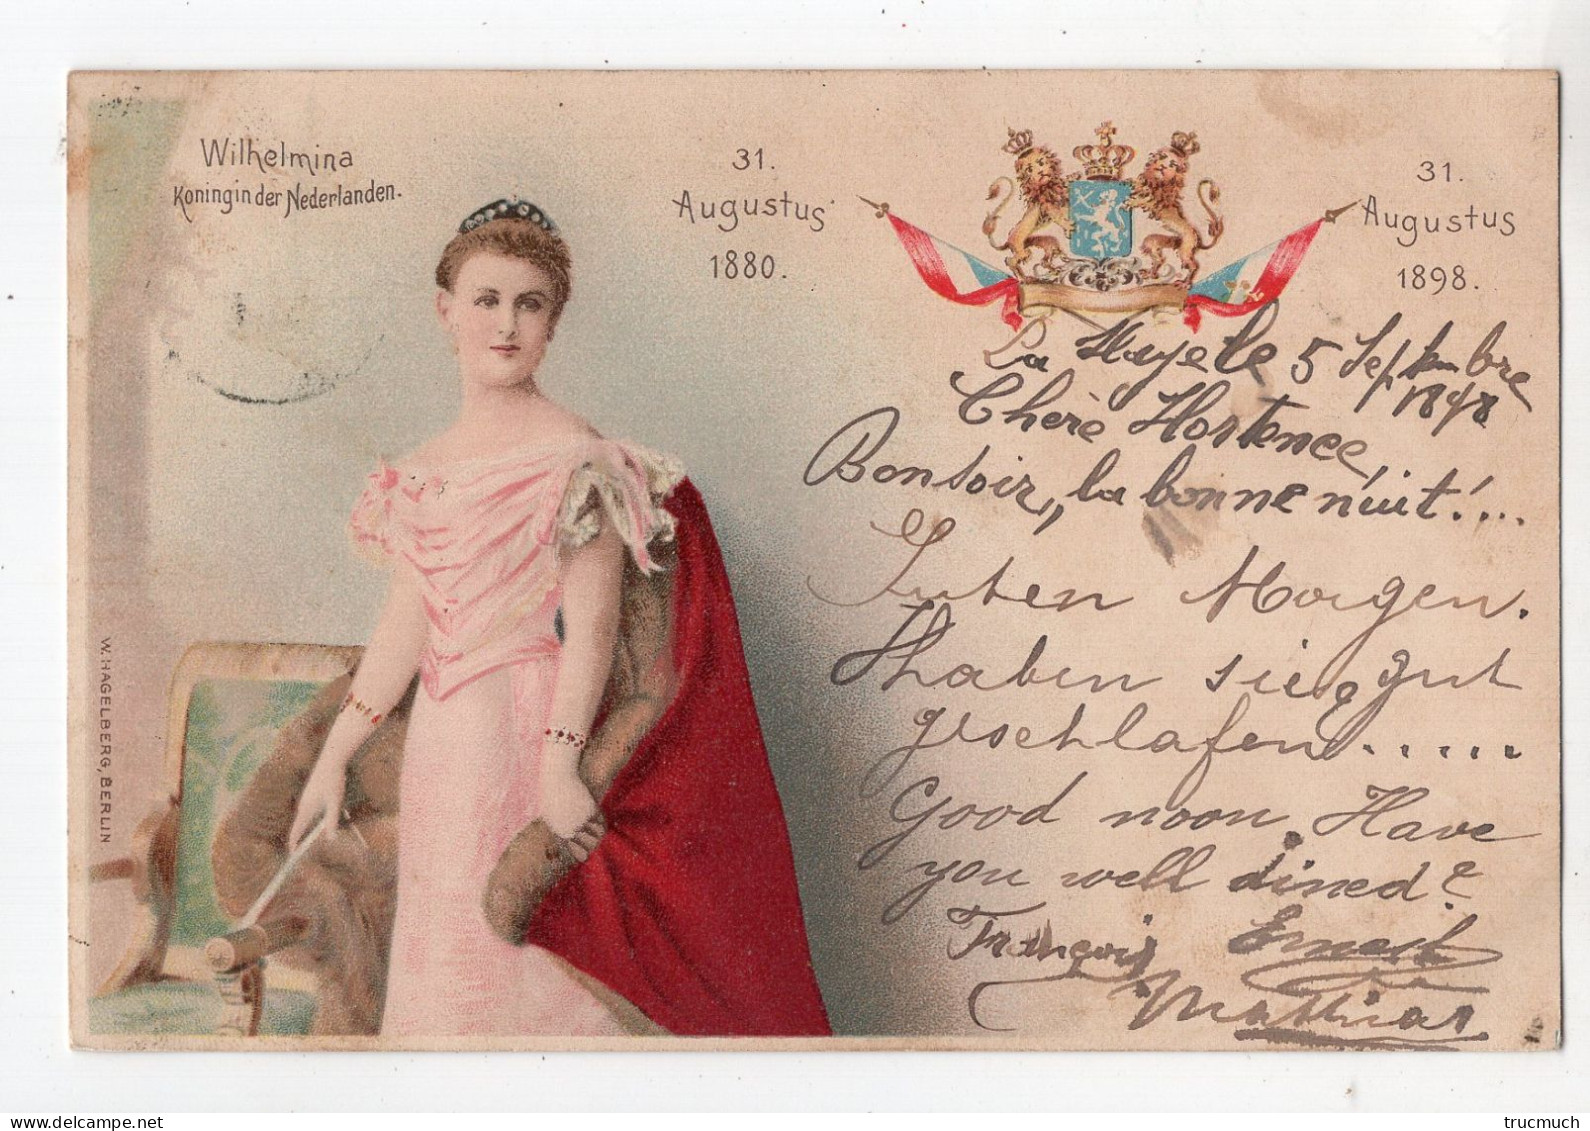 137 - FAMILLE ROYALE - HOLLANDE - Konigin Der Nederlanden *1898* - Familles Royales